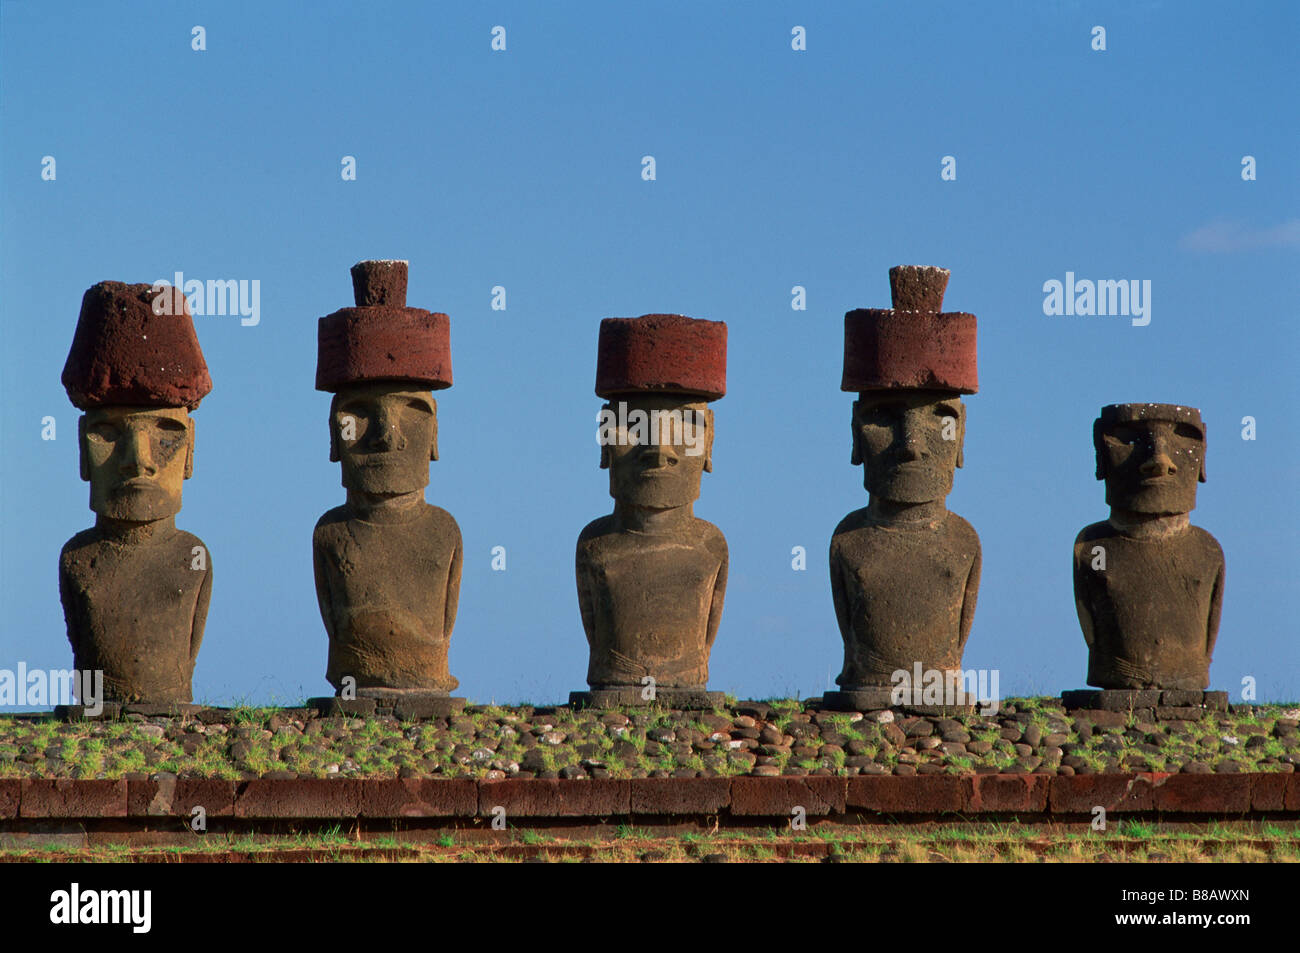 FV3515, Dave Nunuk; Statues, Moai  ahu ure huki, Easter Island, Chile Stock Photo